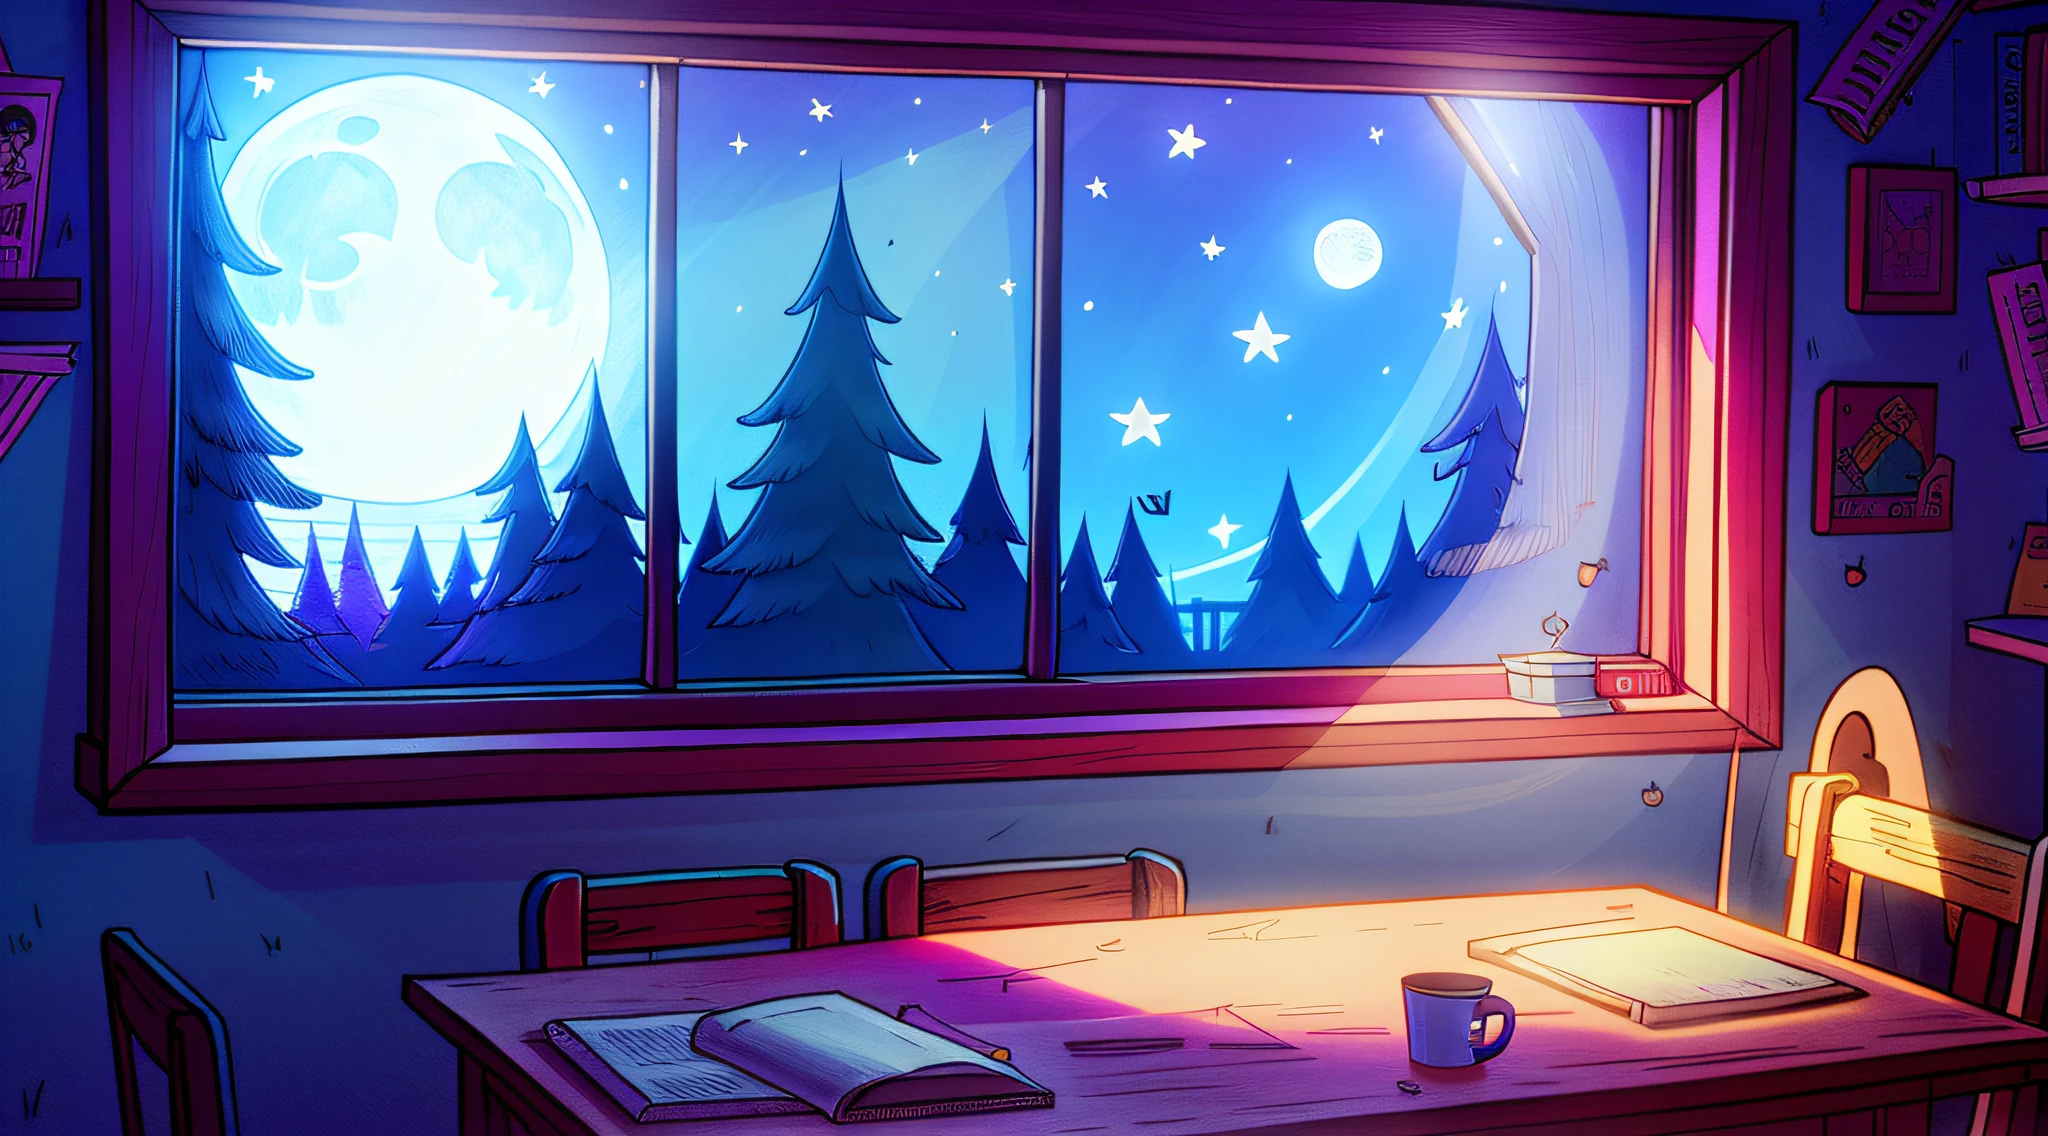 уютная комната ночью, лунный свет светит в окно, подробная иллюстрация, девочка учится за столом, мультфильмы, в стиле гравитифолз,